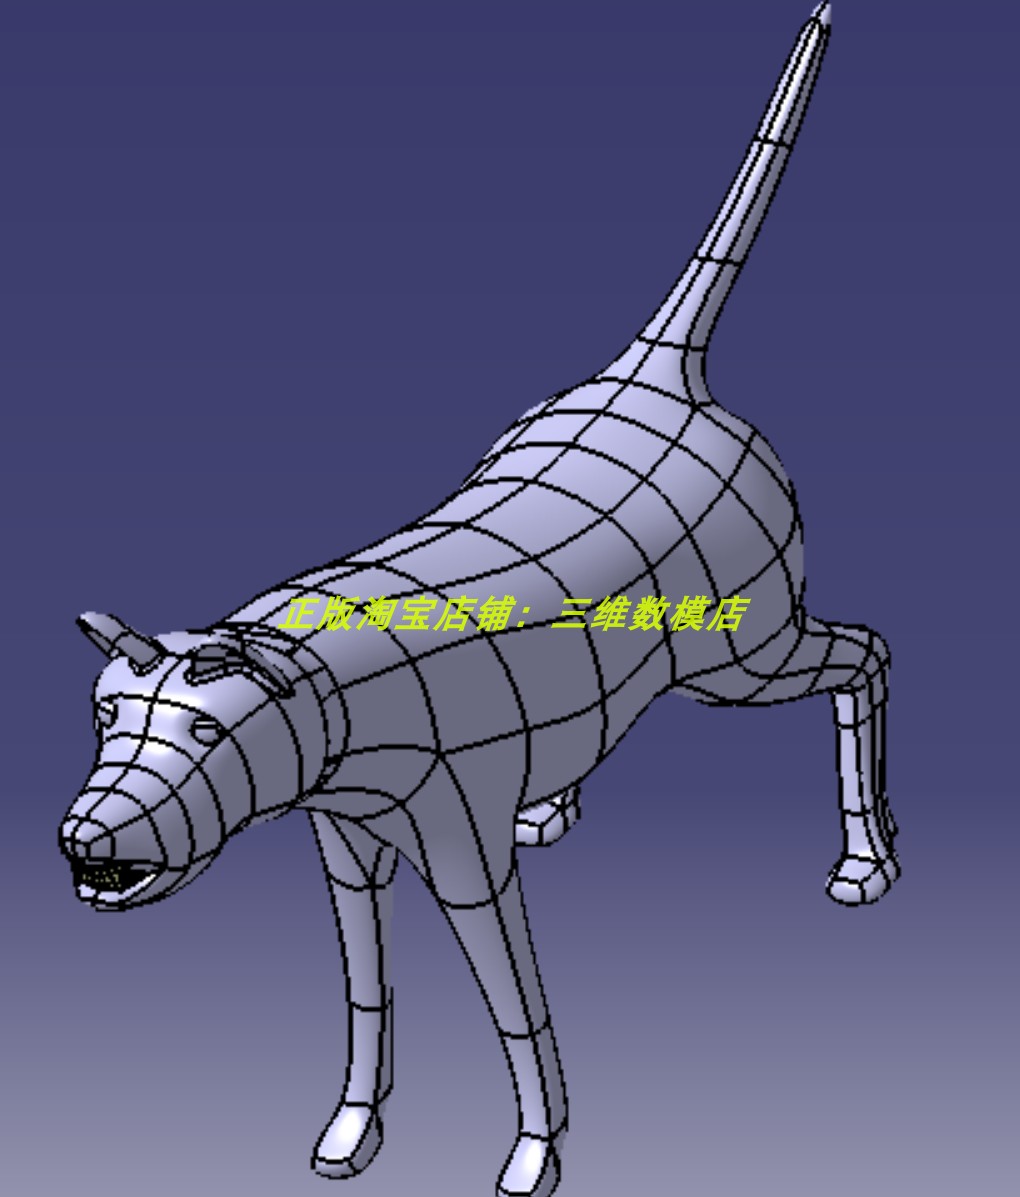 猛犬吠叫示警攻击小狗狗狼狗三维几何模型数模建模3D打印素材动物